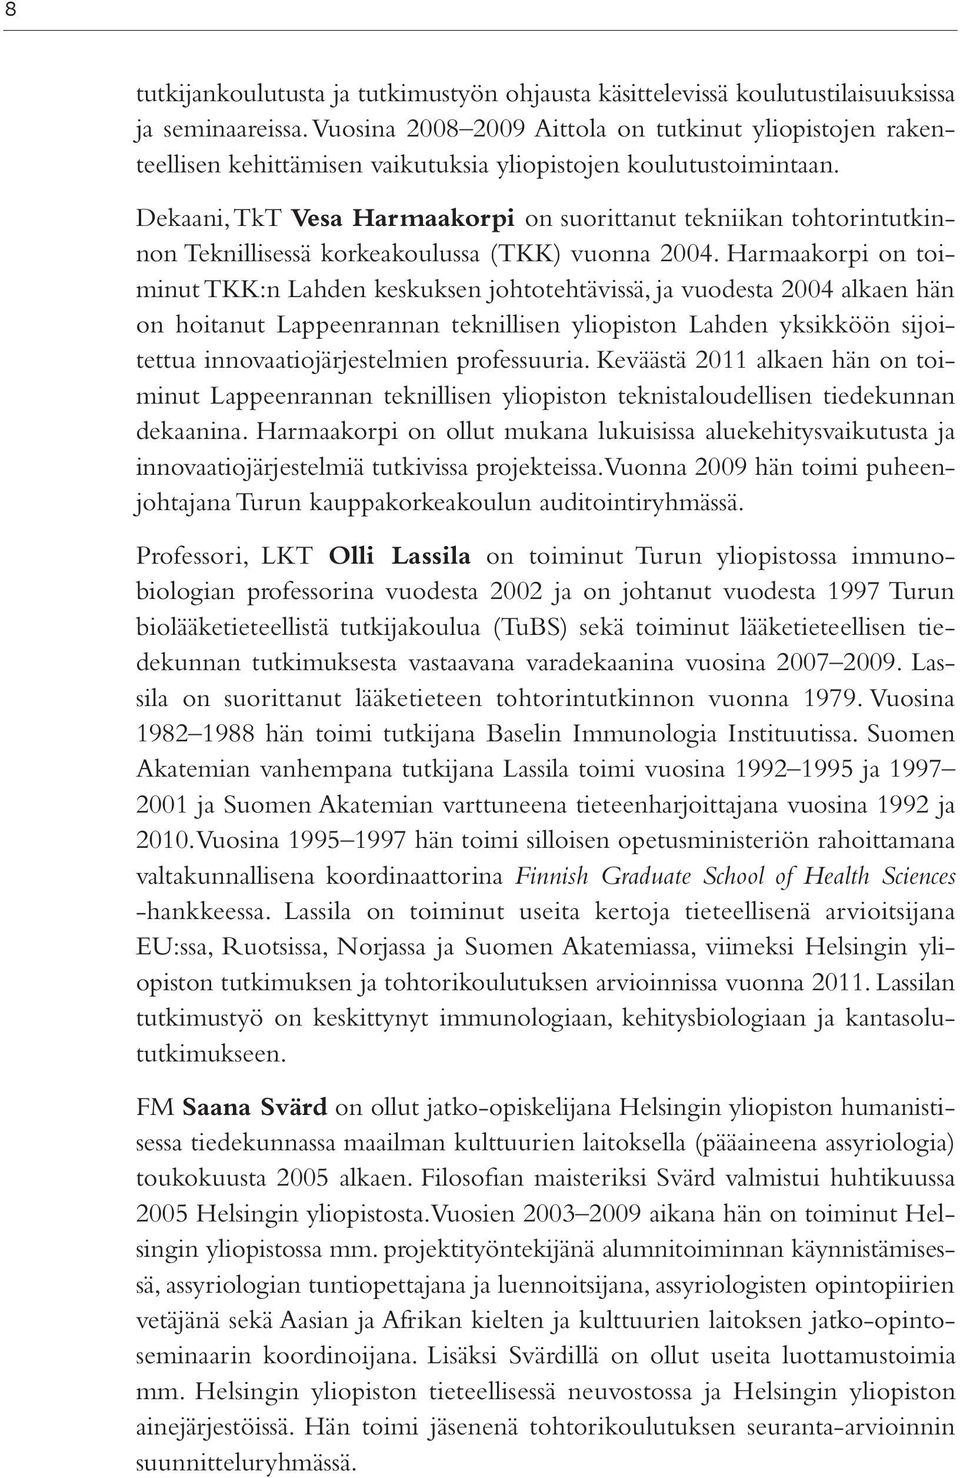 Dekaani, TkT Vesa Harmaakorpi on suorittanut tekniikan tohtorintutkinnon Teknillisessä korkeakoulussa (TKK) vuonna 2004.